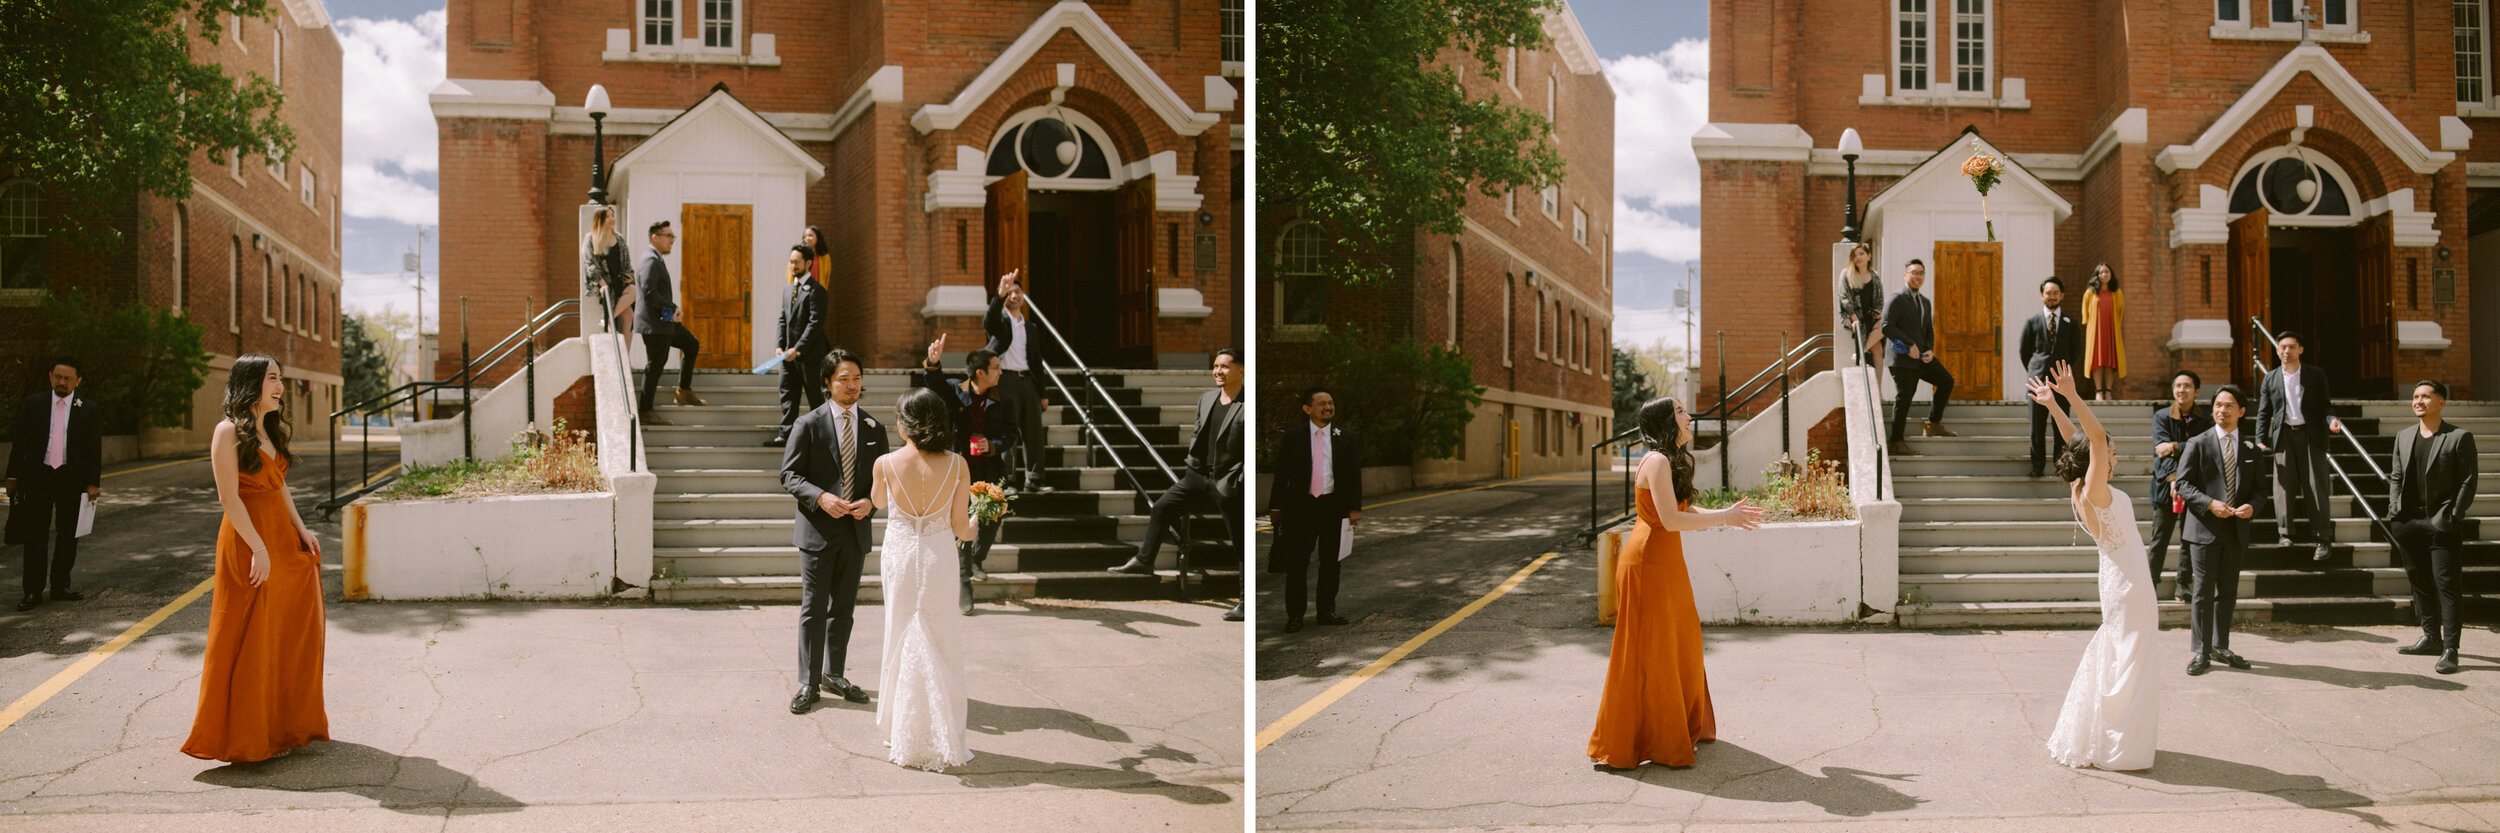 Edmonton-Wedding-Photographer10.jpg